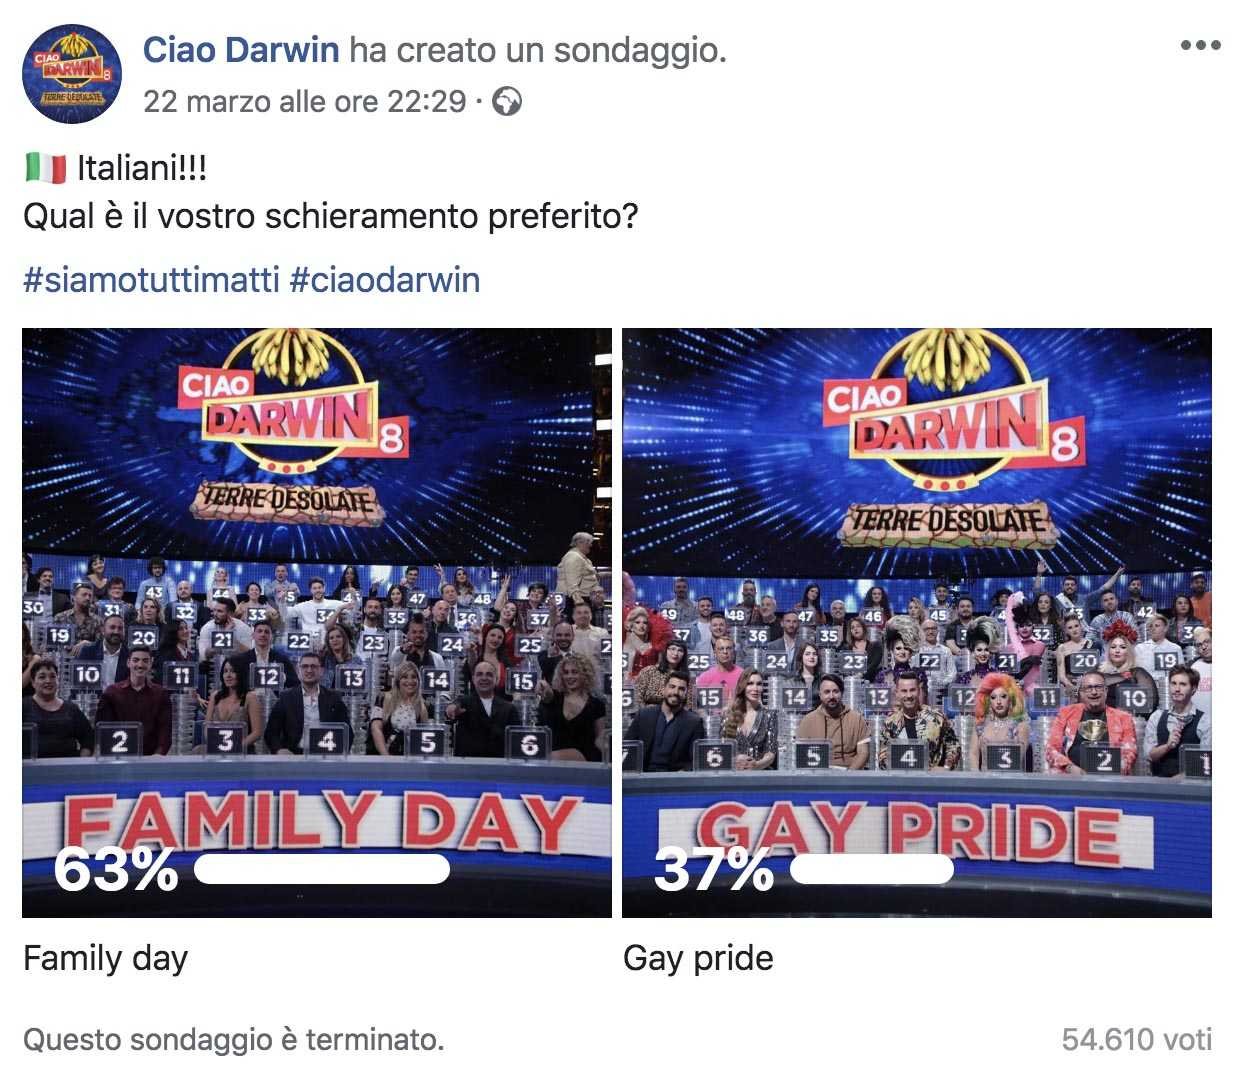 Risultati immagini per gay pride e family day immagini